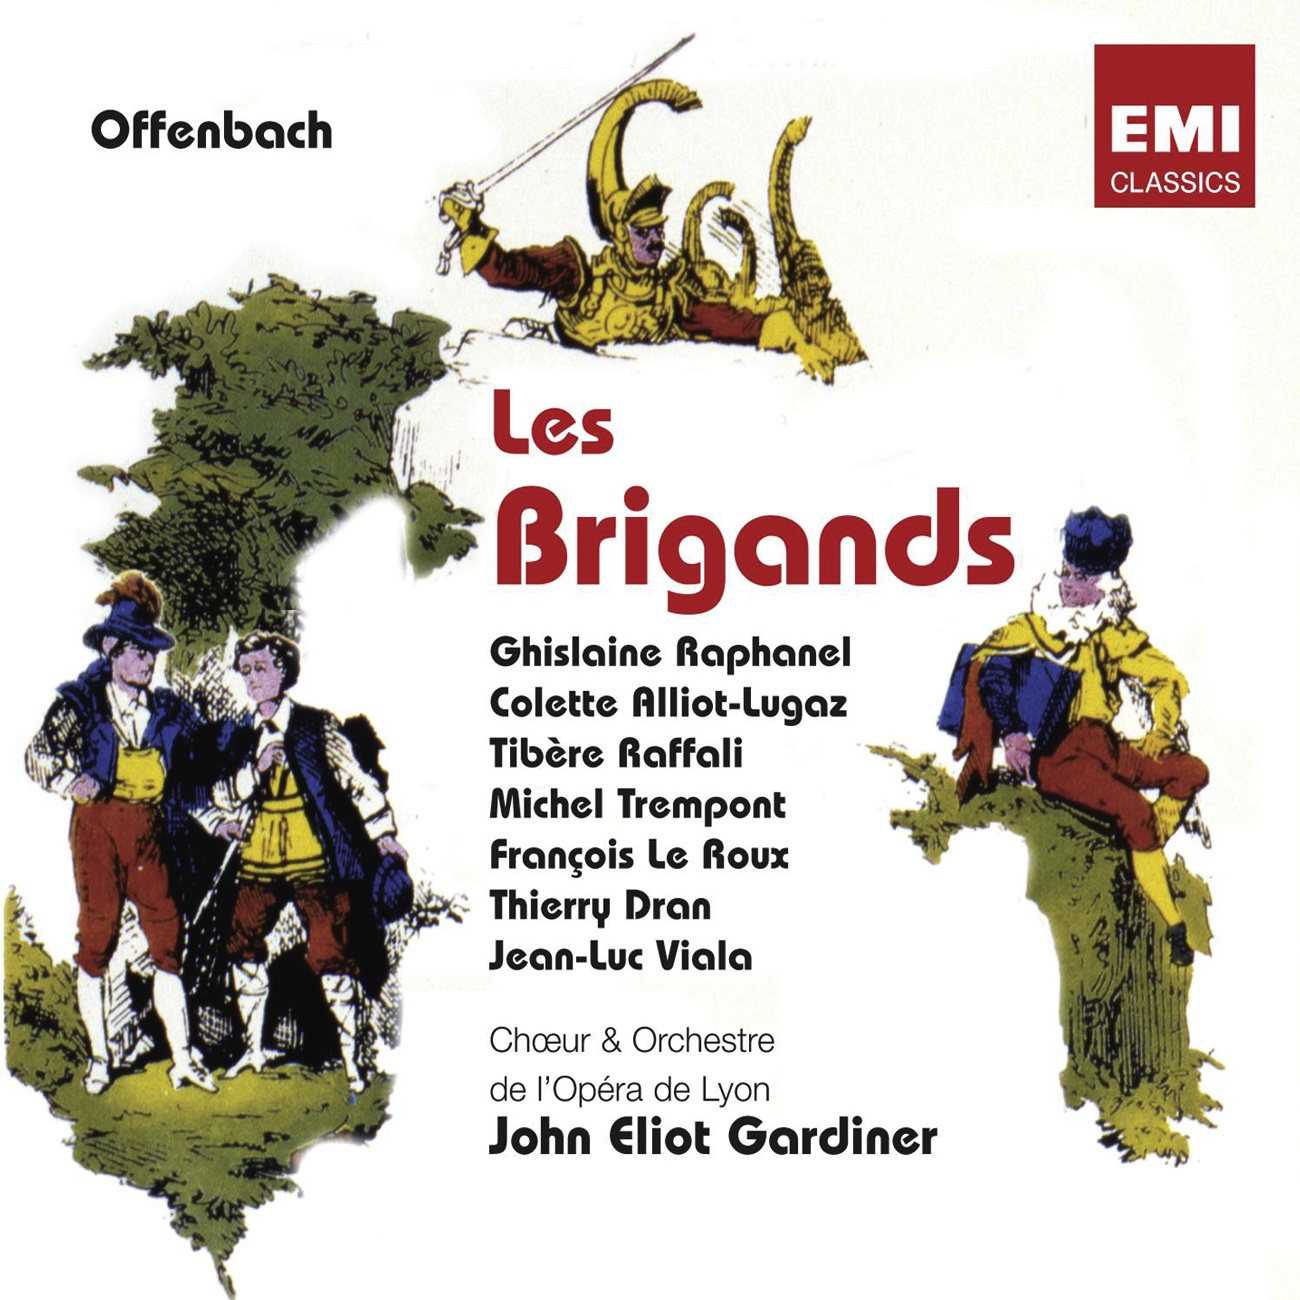 Les Brigands  Ope raBouffe En 3 Actes. Livret D' Henri Meilhac  Ludovic Hale vy  Acte III  N 22  Finale : Coquin, Brigand, Tr